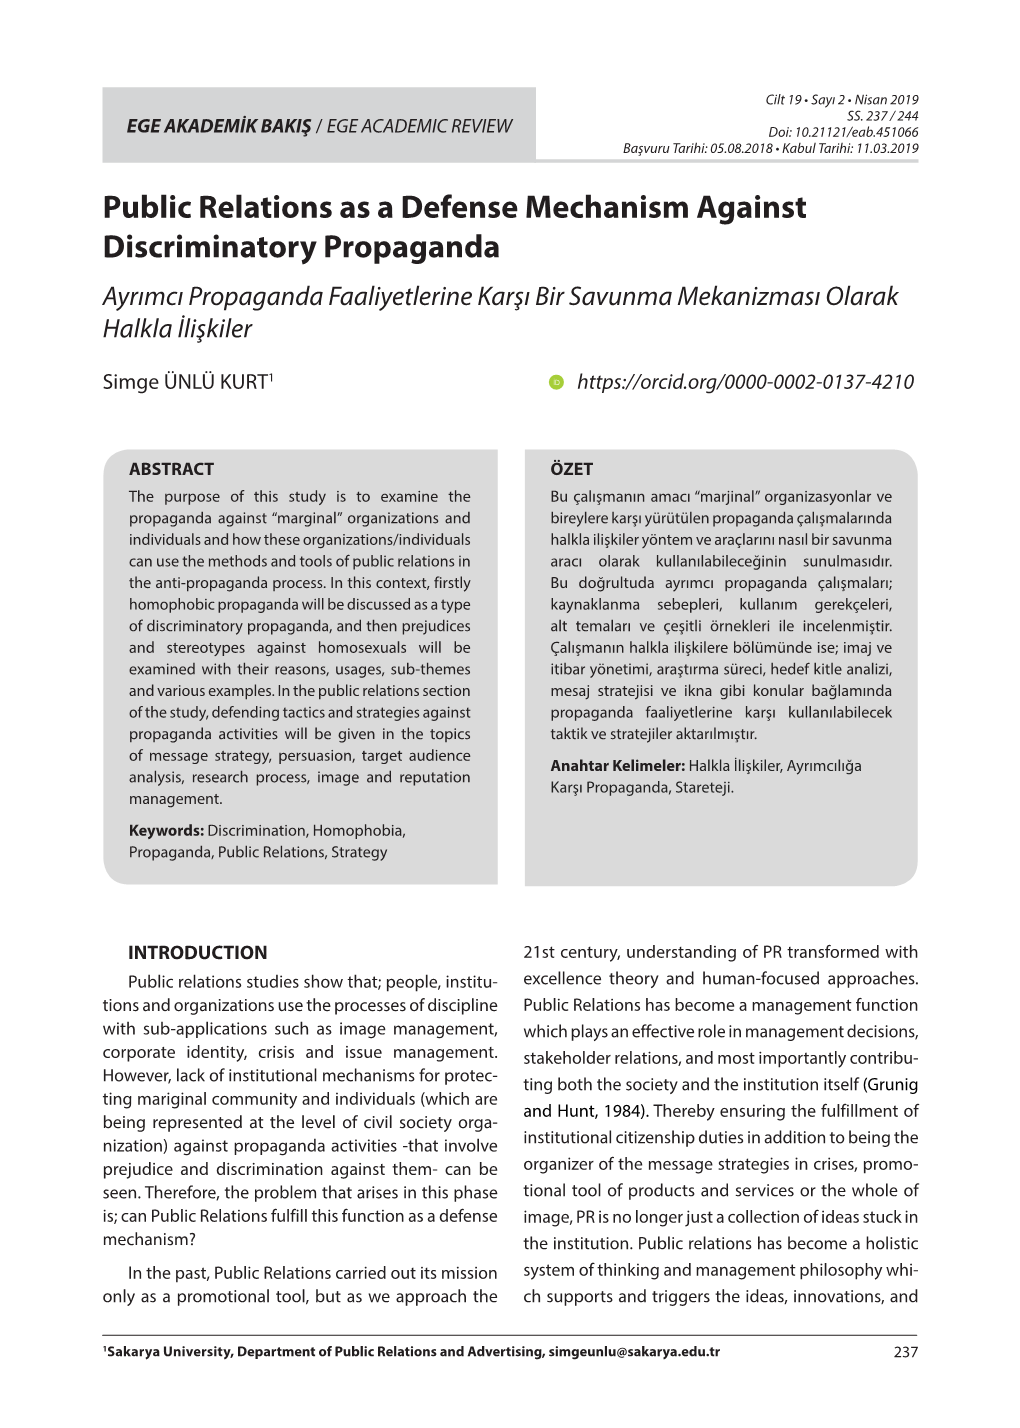 Public Relations As a Defense Mechanism Against Discriminatory Propaganda Ayrımcı Propaganda Faaliyetlerine Karşı Bir Savunma Mekanizması Olarak Halkla İlişkiler